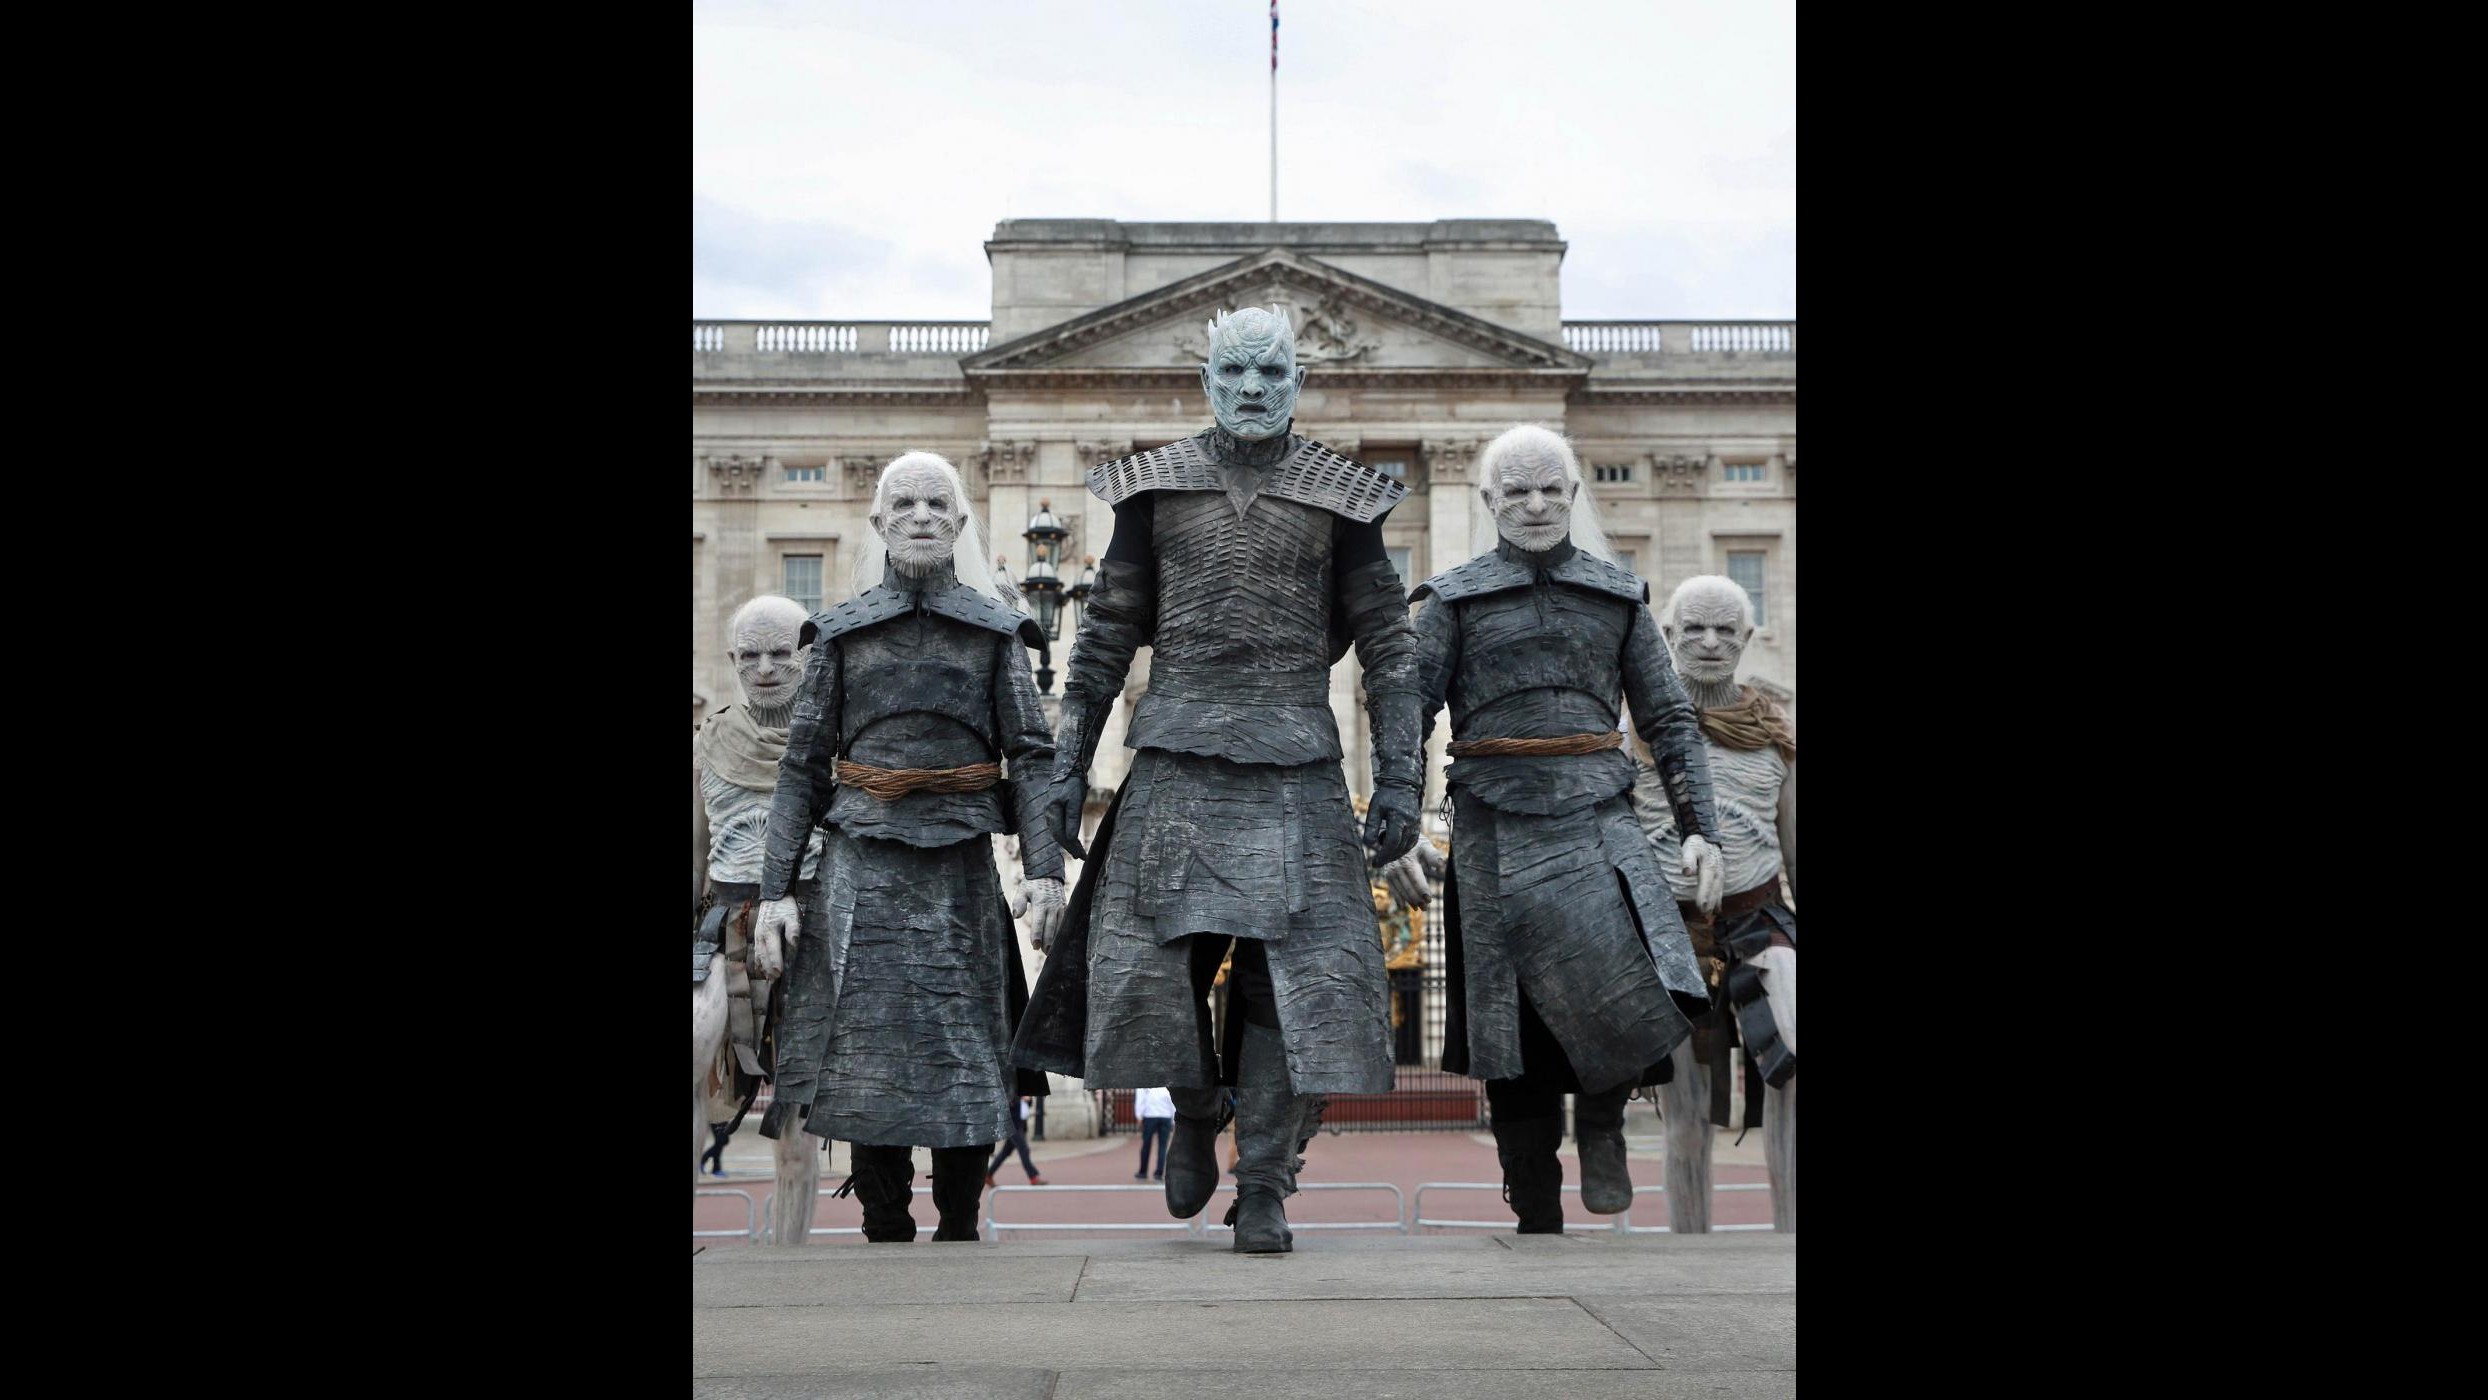 L’inverno arriva a Londra: gli ‘estranei’ del Trono di Spade in giro per la città